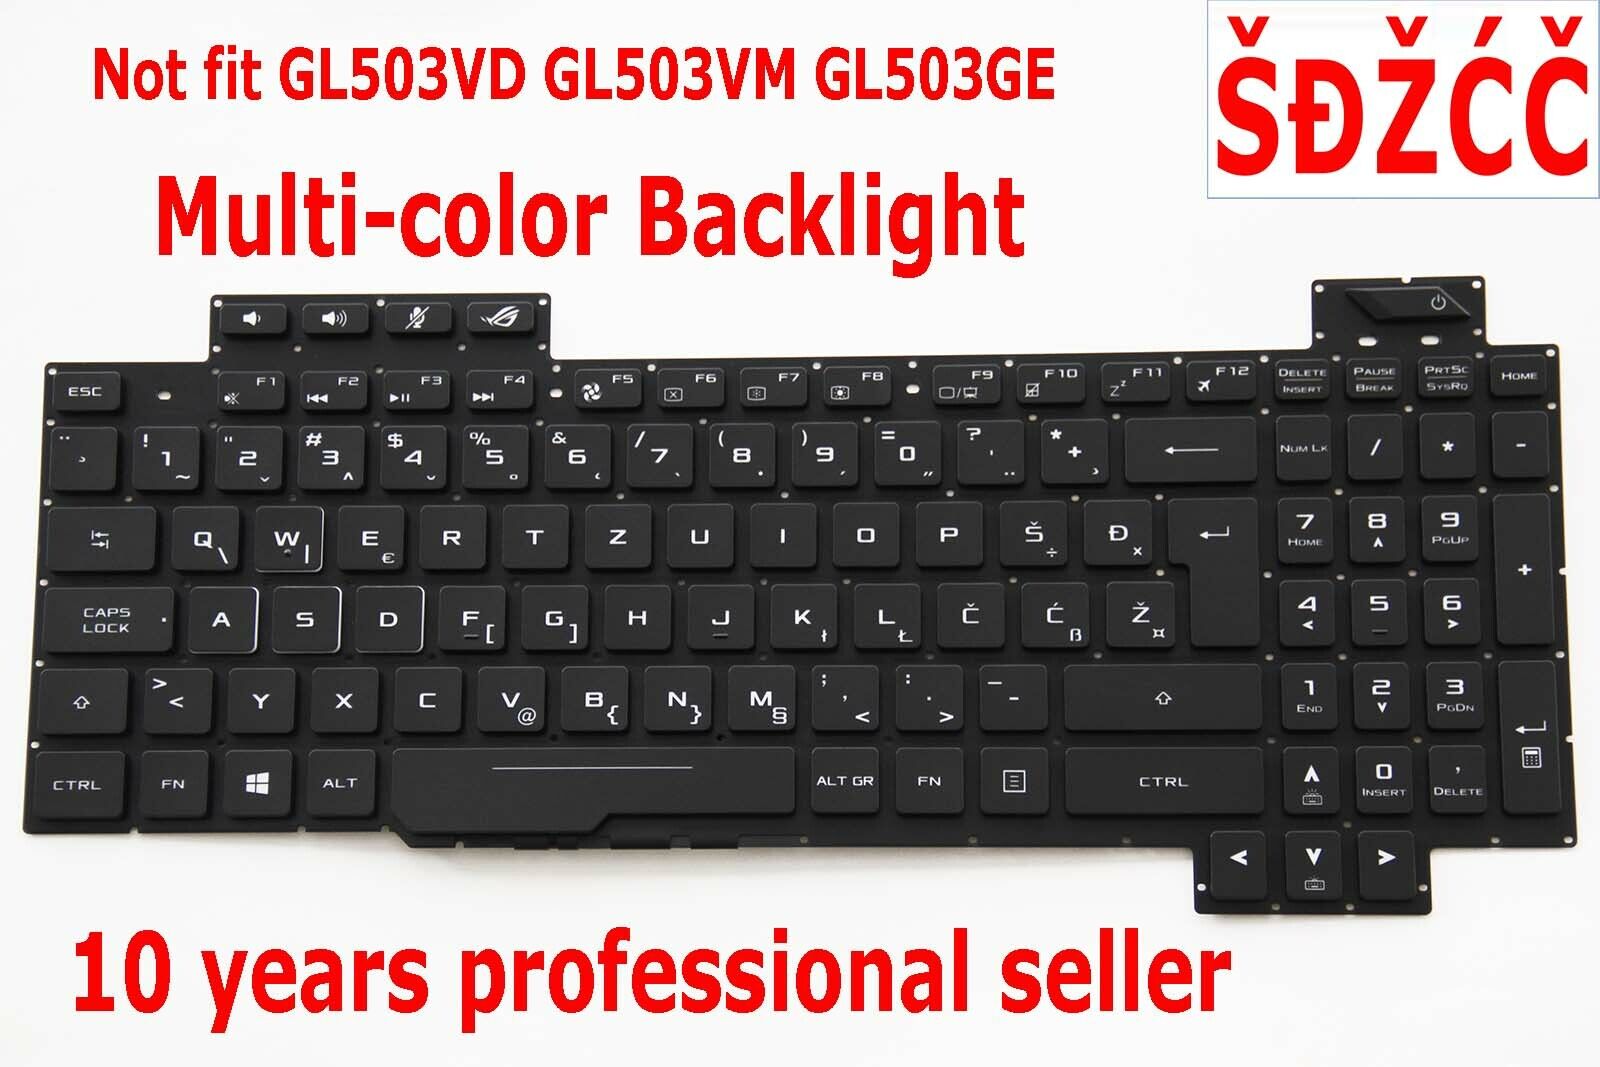 Slovenian Croatian Keyboard for Asus GL503VS Backlit Tipkovnica Not Fit GL503VD